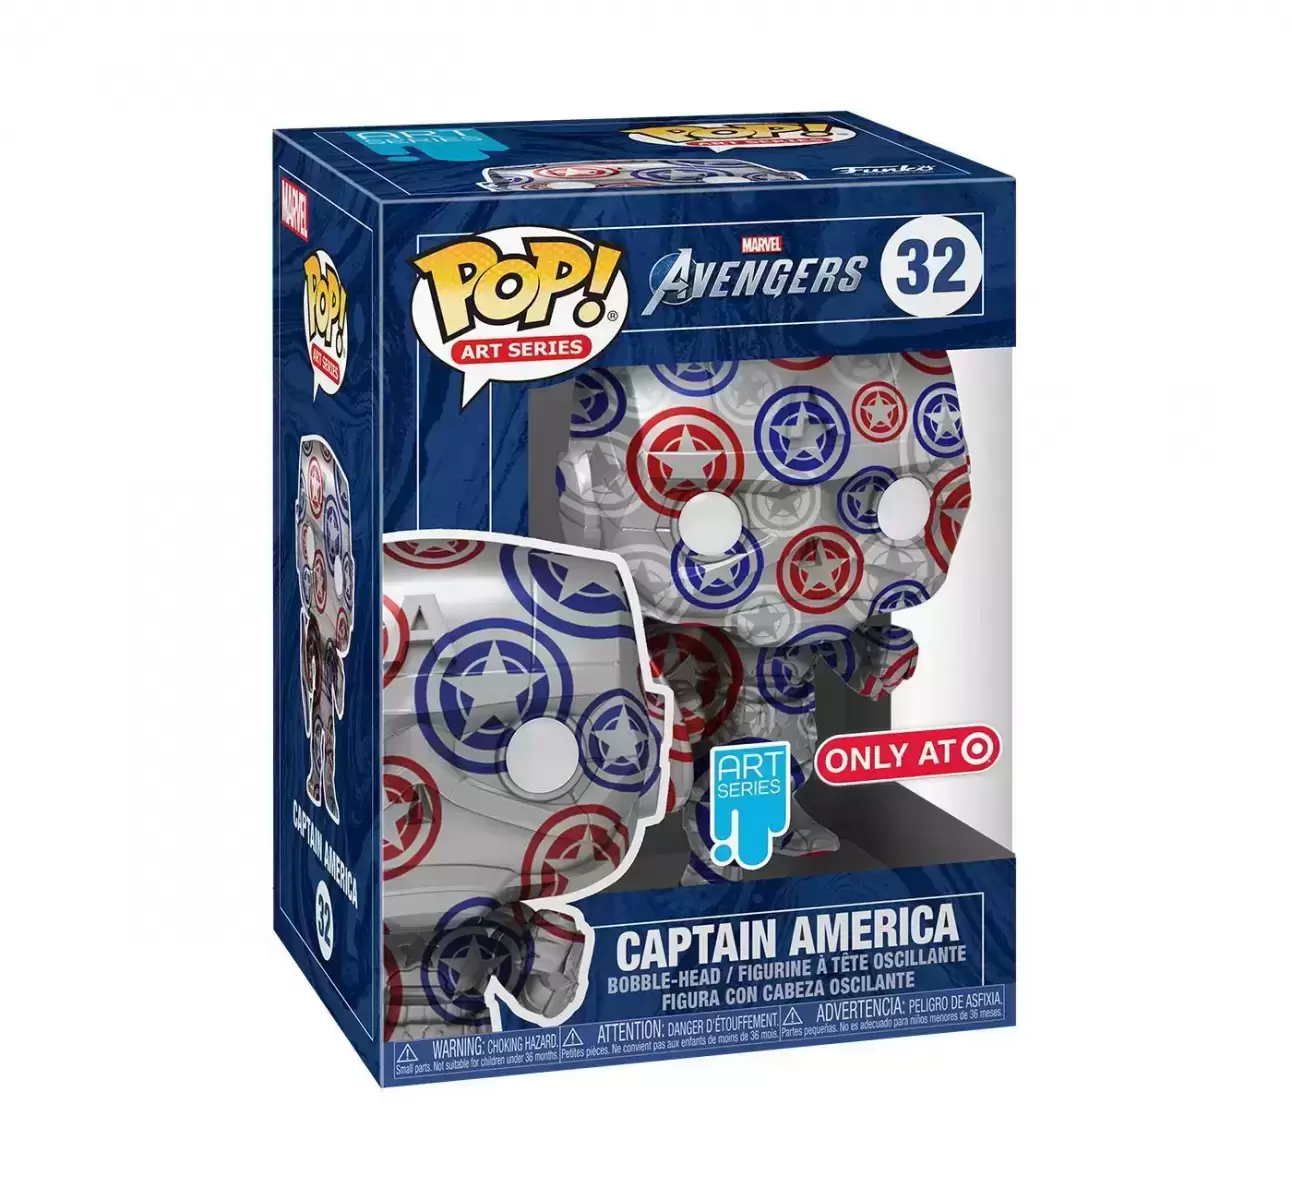 POP! Art Series - Avengers - Captain America